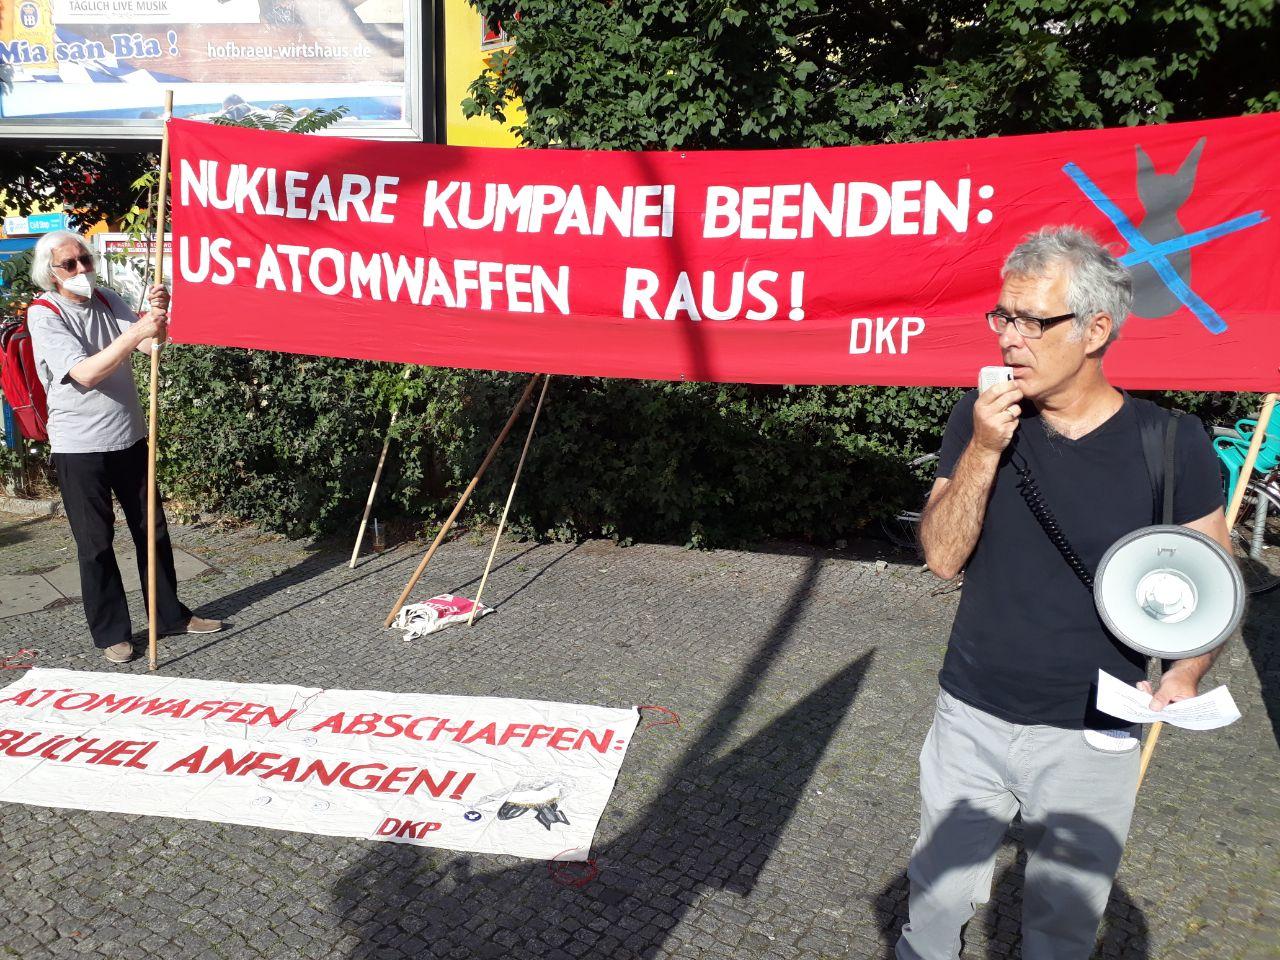 berlin - DKP-Aktionstage zum 75. Jahrestag der Atombombenabwürfe - Atomwaffen, DKP, Proteste - Blog